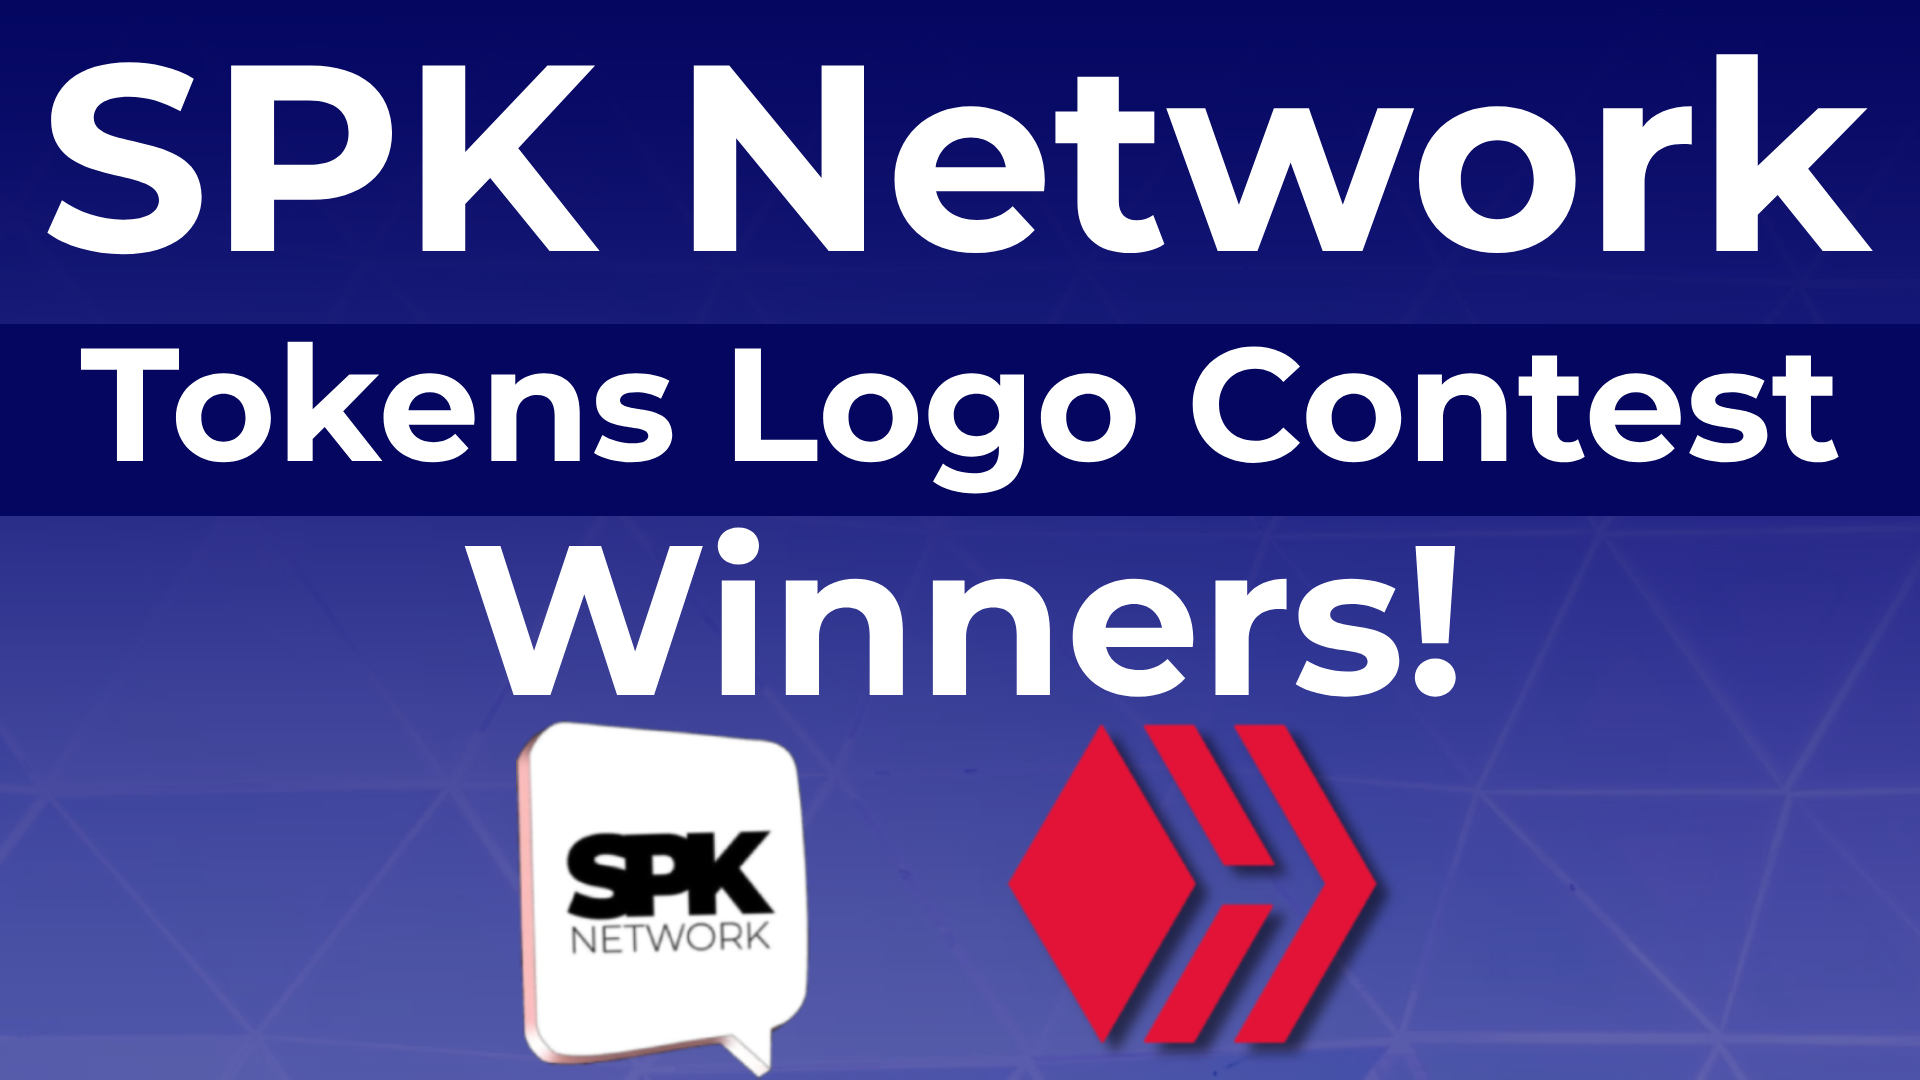 @spknetwork/spk-network-tokens-logo-winners